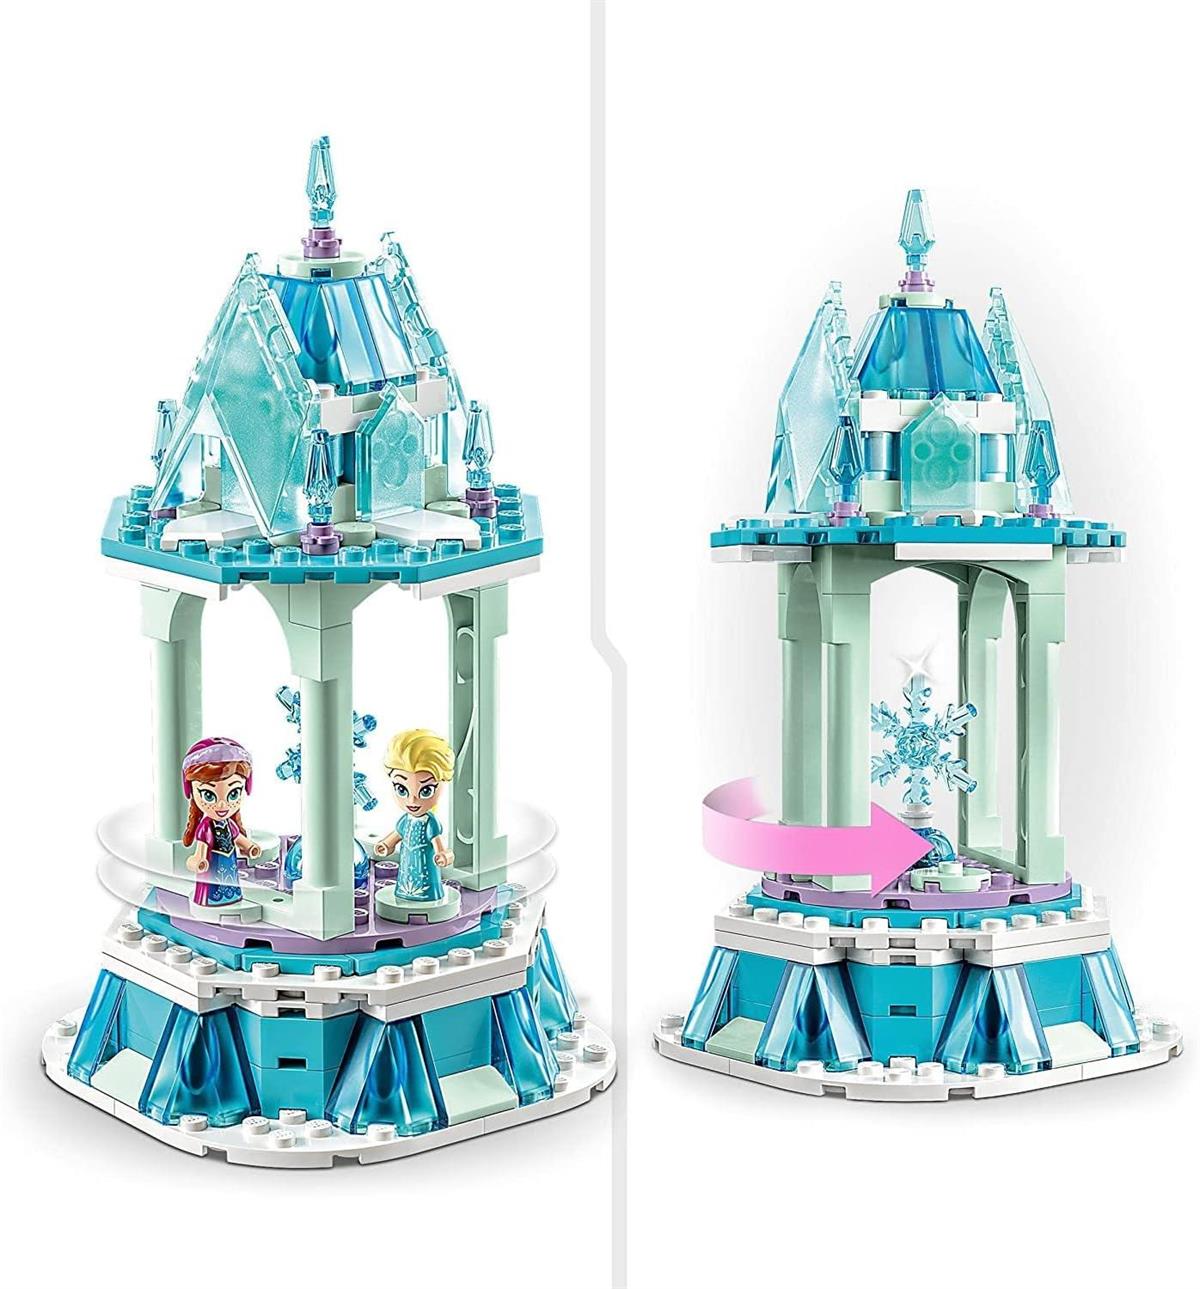 Lego Disney Anna ve Elsa'nın Sihirli Atlıkarıncası 43218 | Toysall